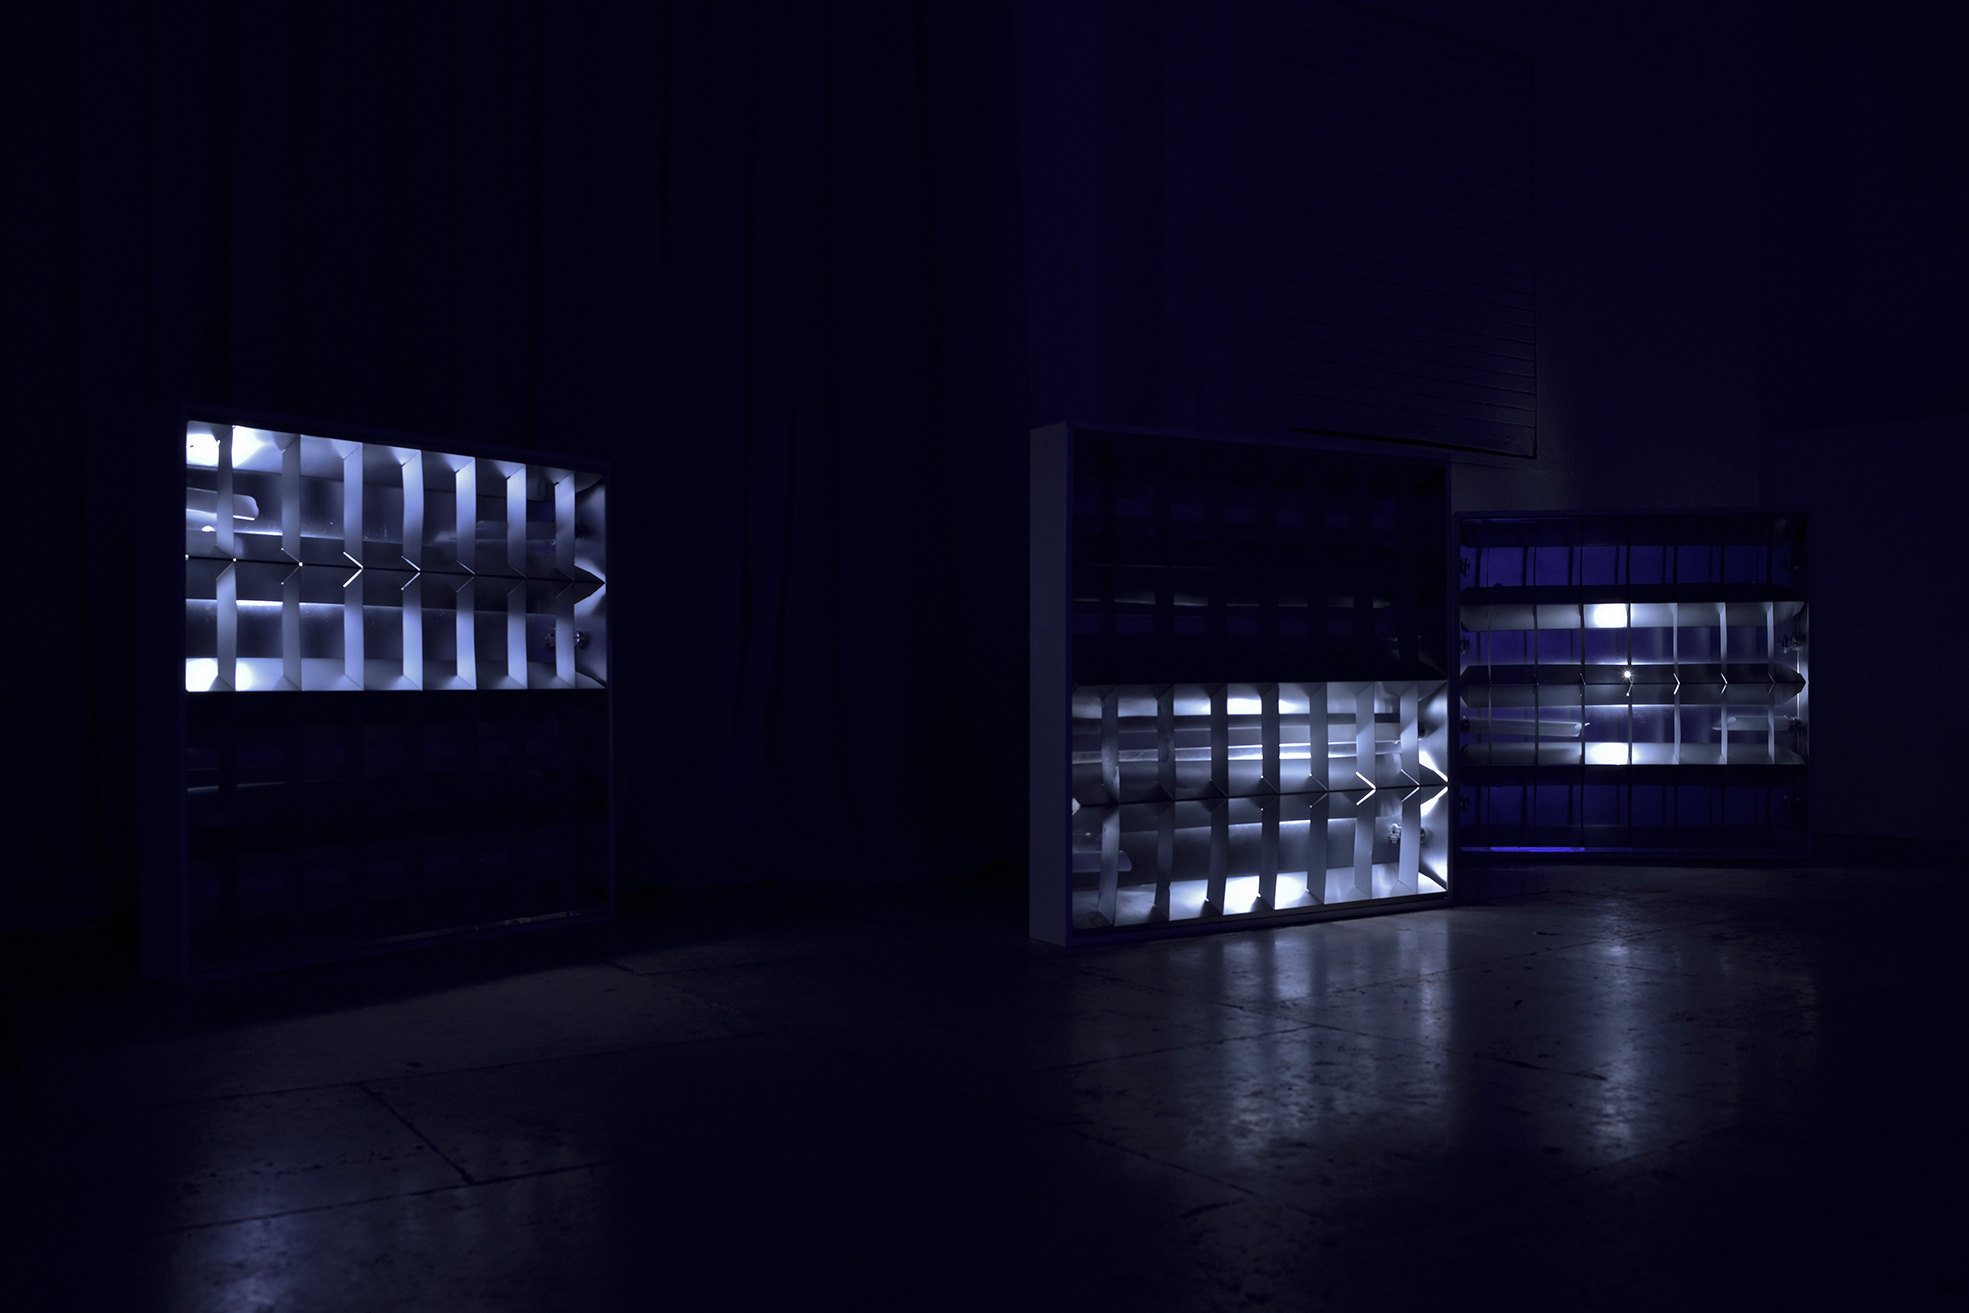 Claude Eigan, Under-C-Level. Plafoniere da soffitto, tubi neon rotti, luci LED ‘breathing’. Dimensioni variabili, dimensioni di ciascun box: 62 x 62 x 10 cm, 2016.